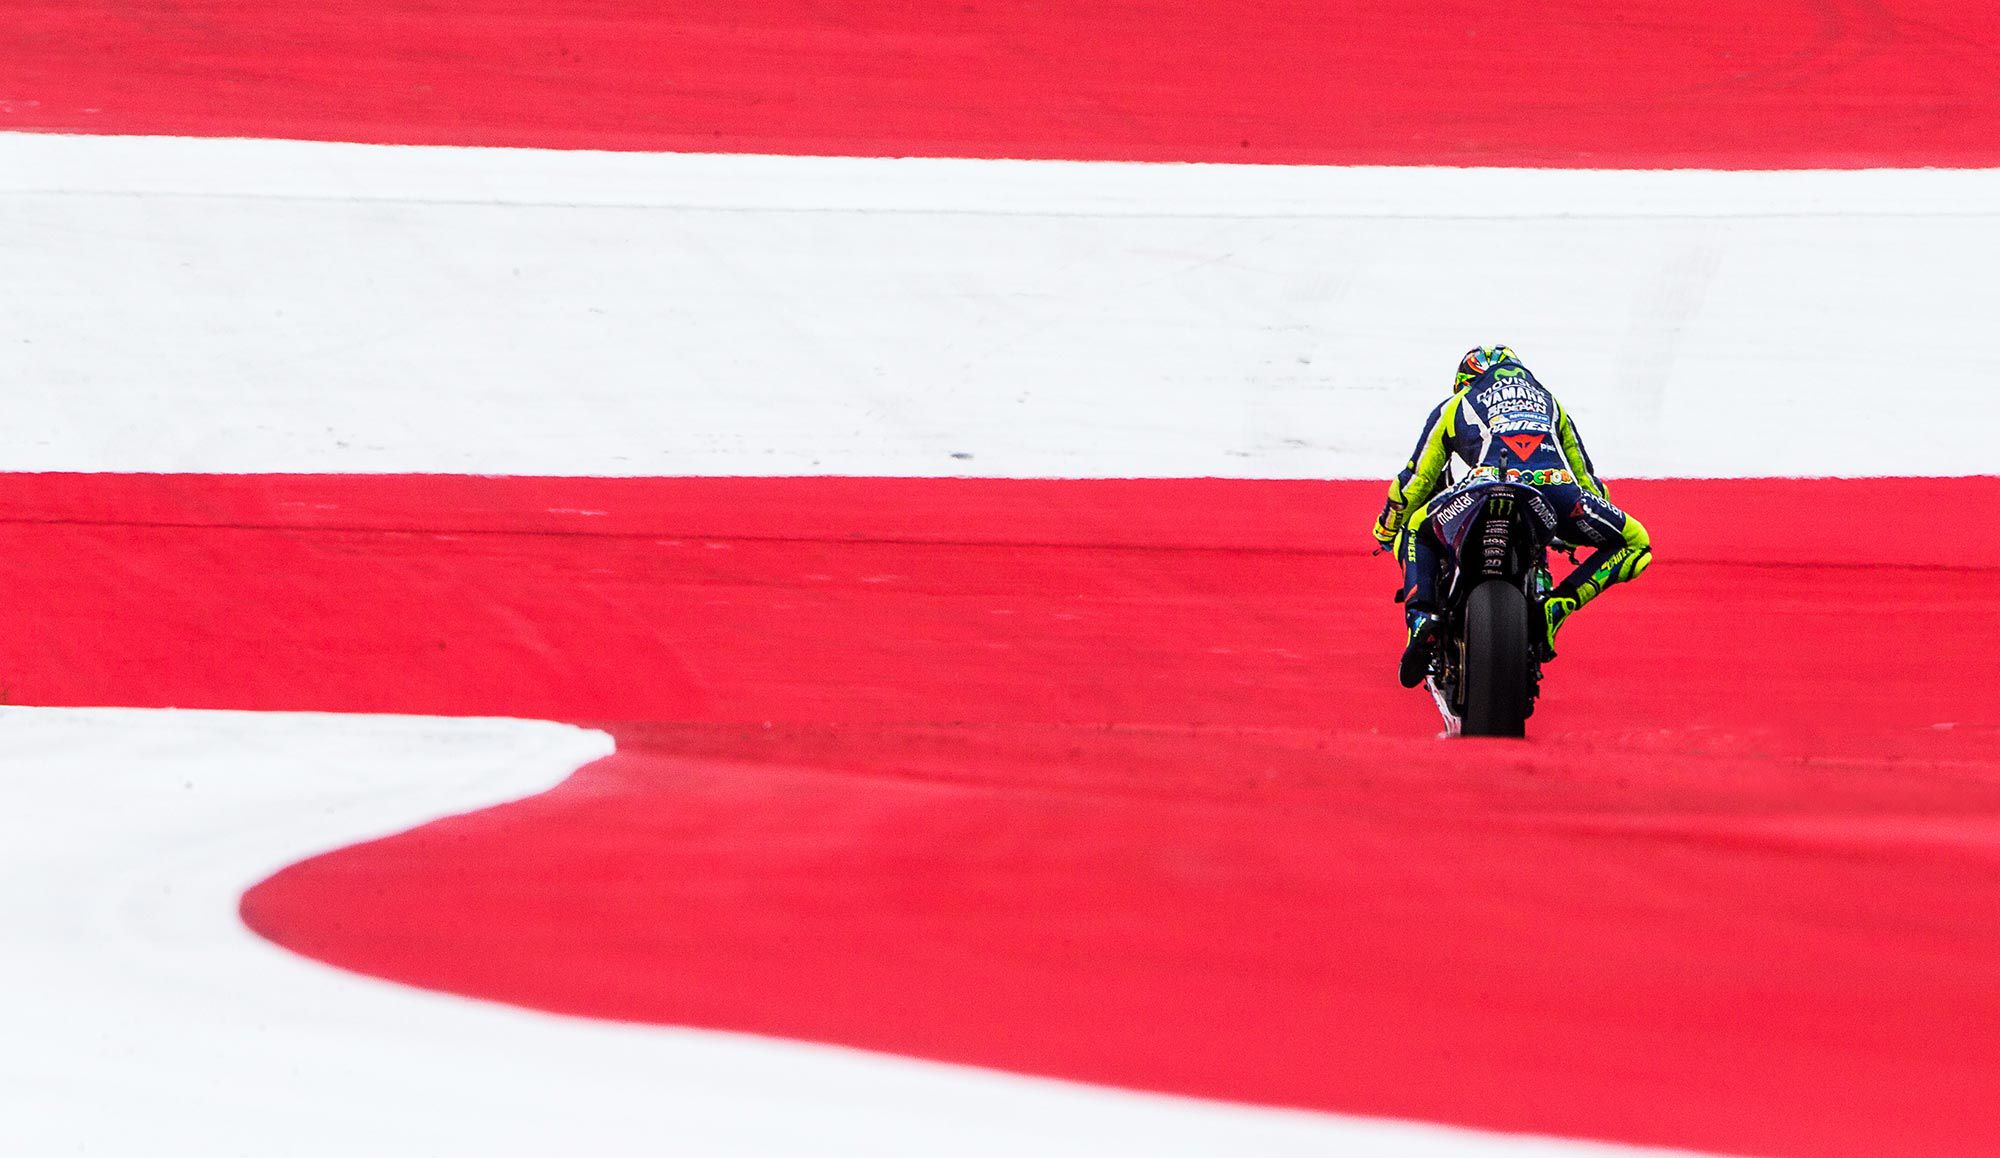 MotoGP legend Valentino Rossi announces retirement